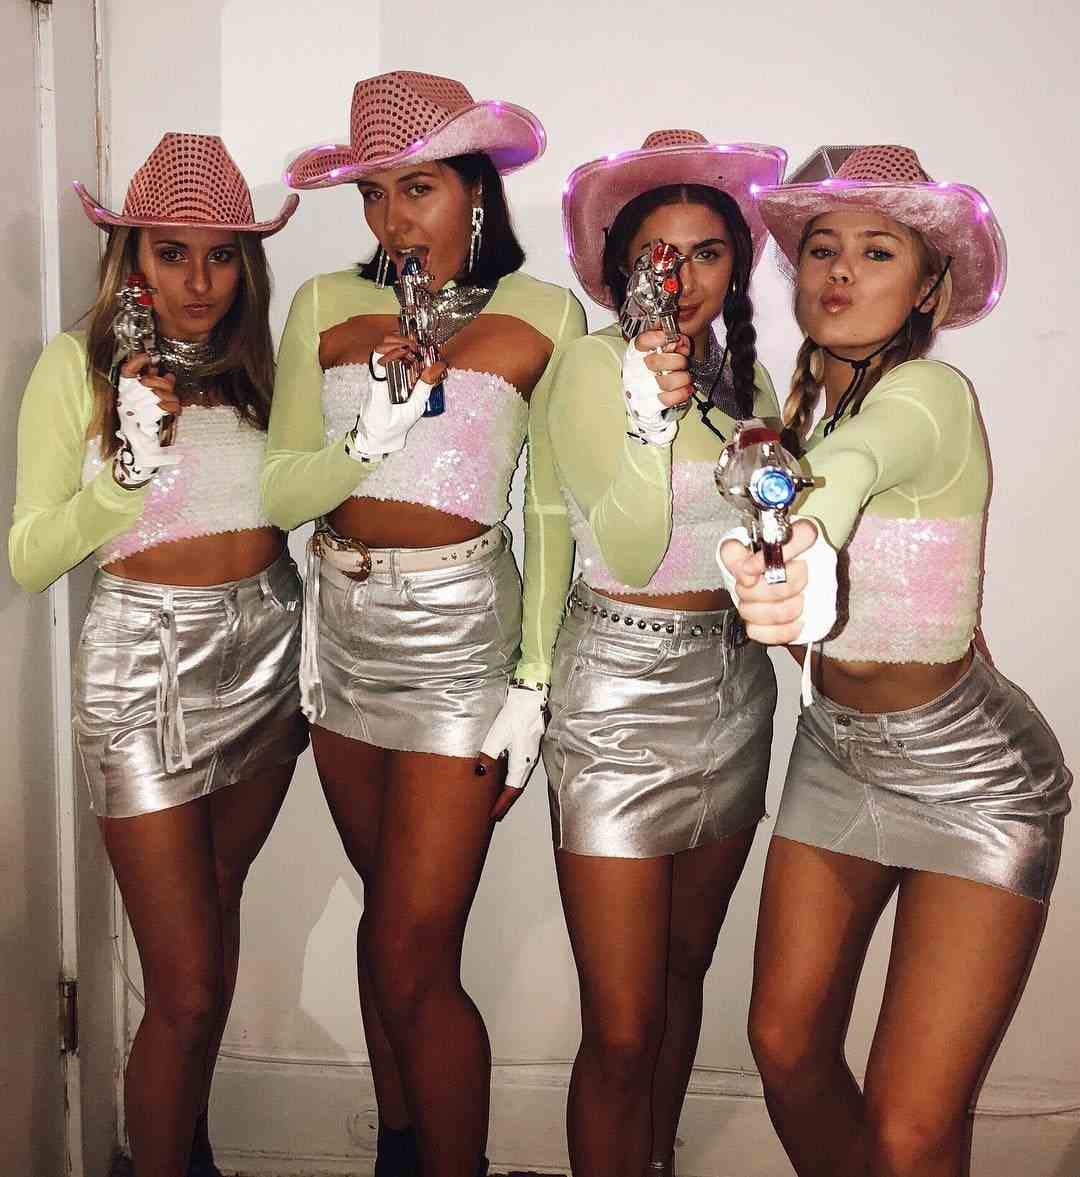 Halloween Gruppen-Kostüm für 4 Personen Cowgirls Kostüm